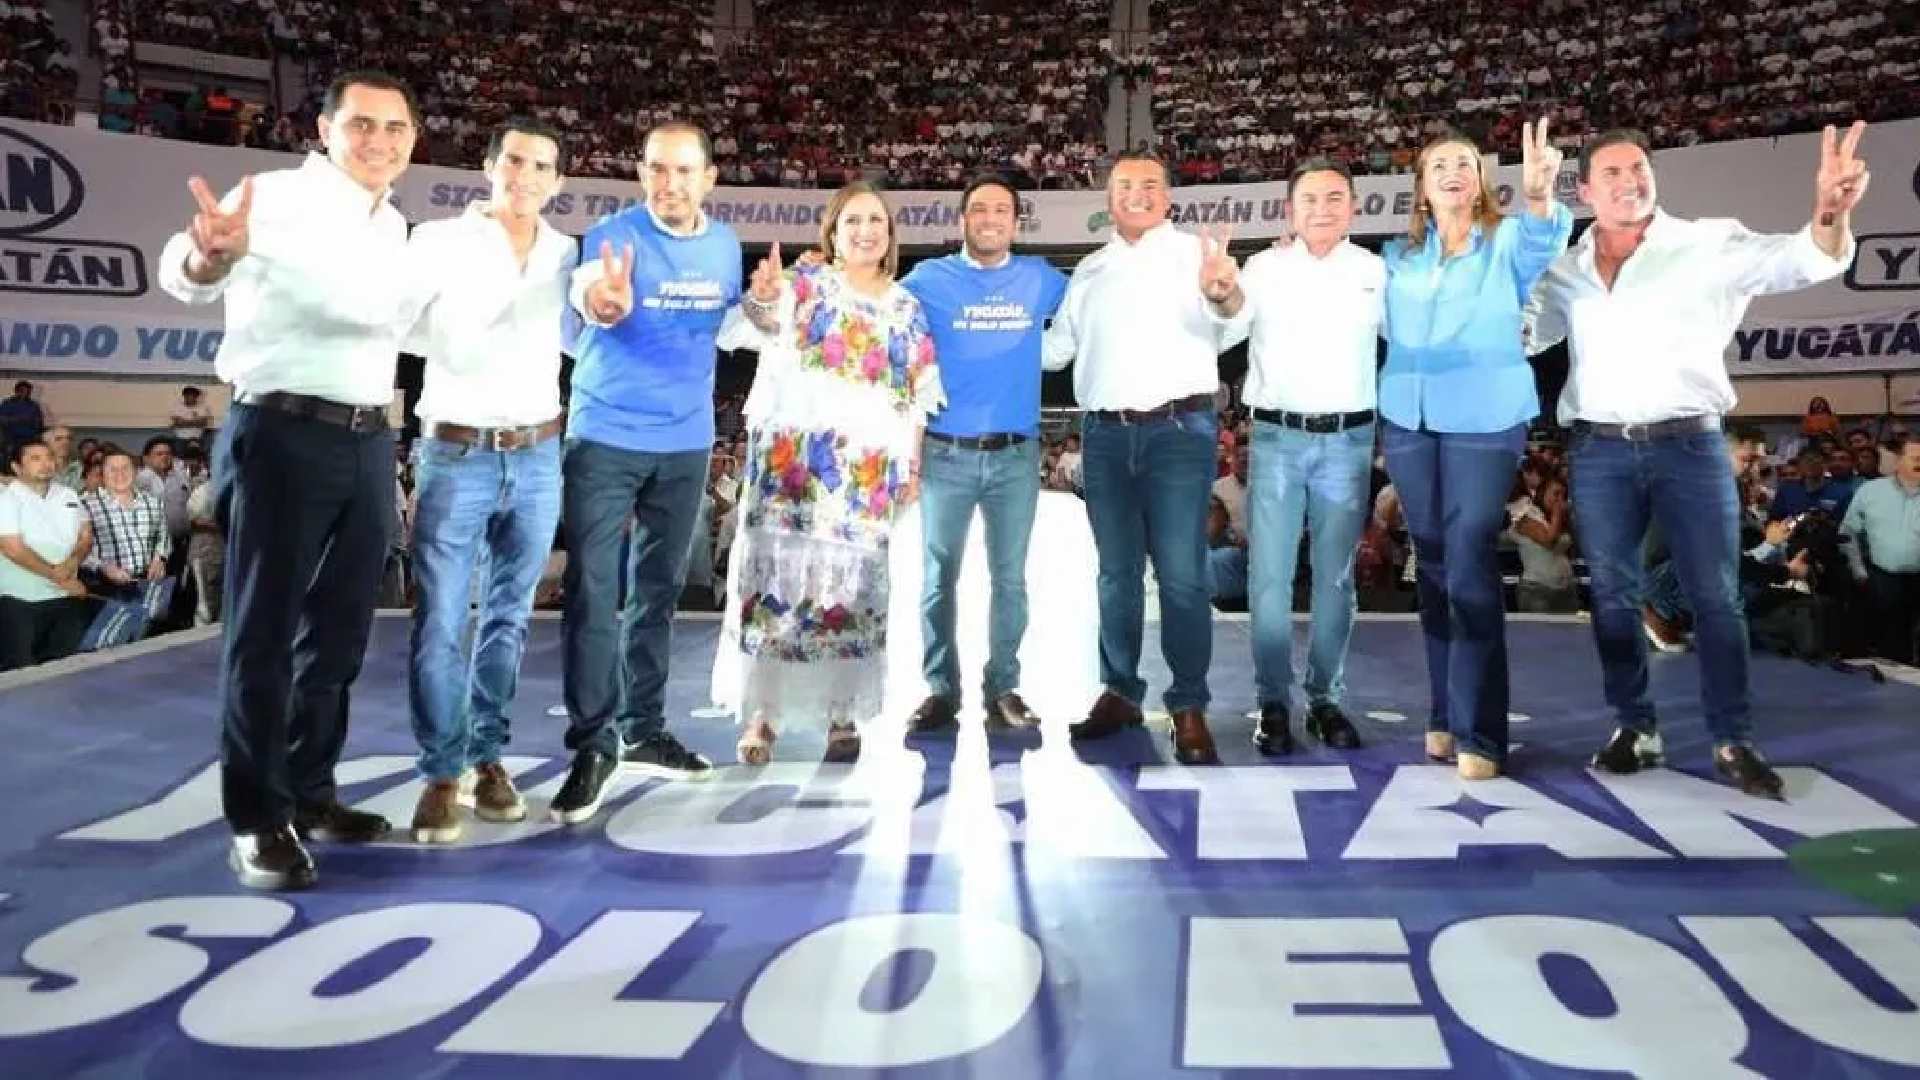 Al grito de"Yucatán un solo equipo" presenta PAN coordinadores de equipo Yucatán